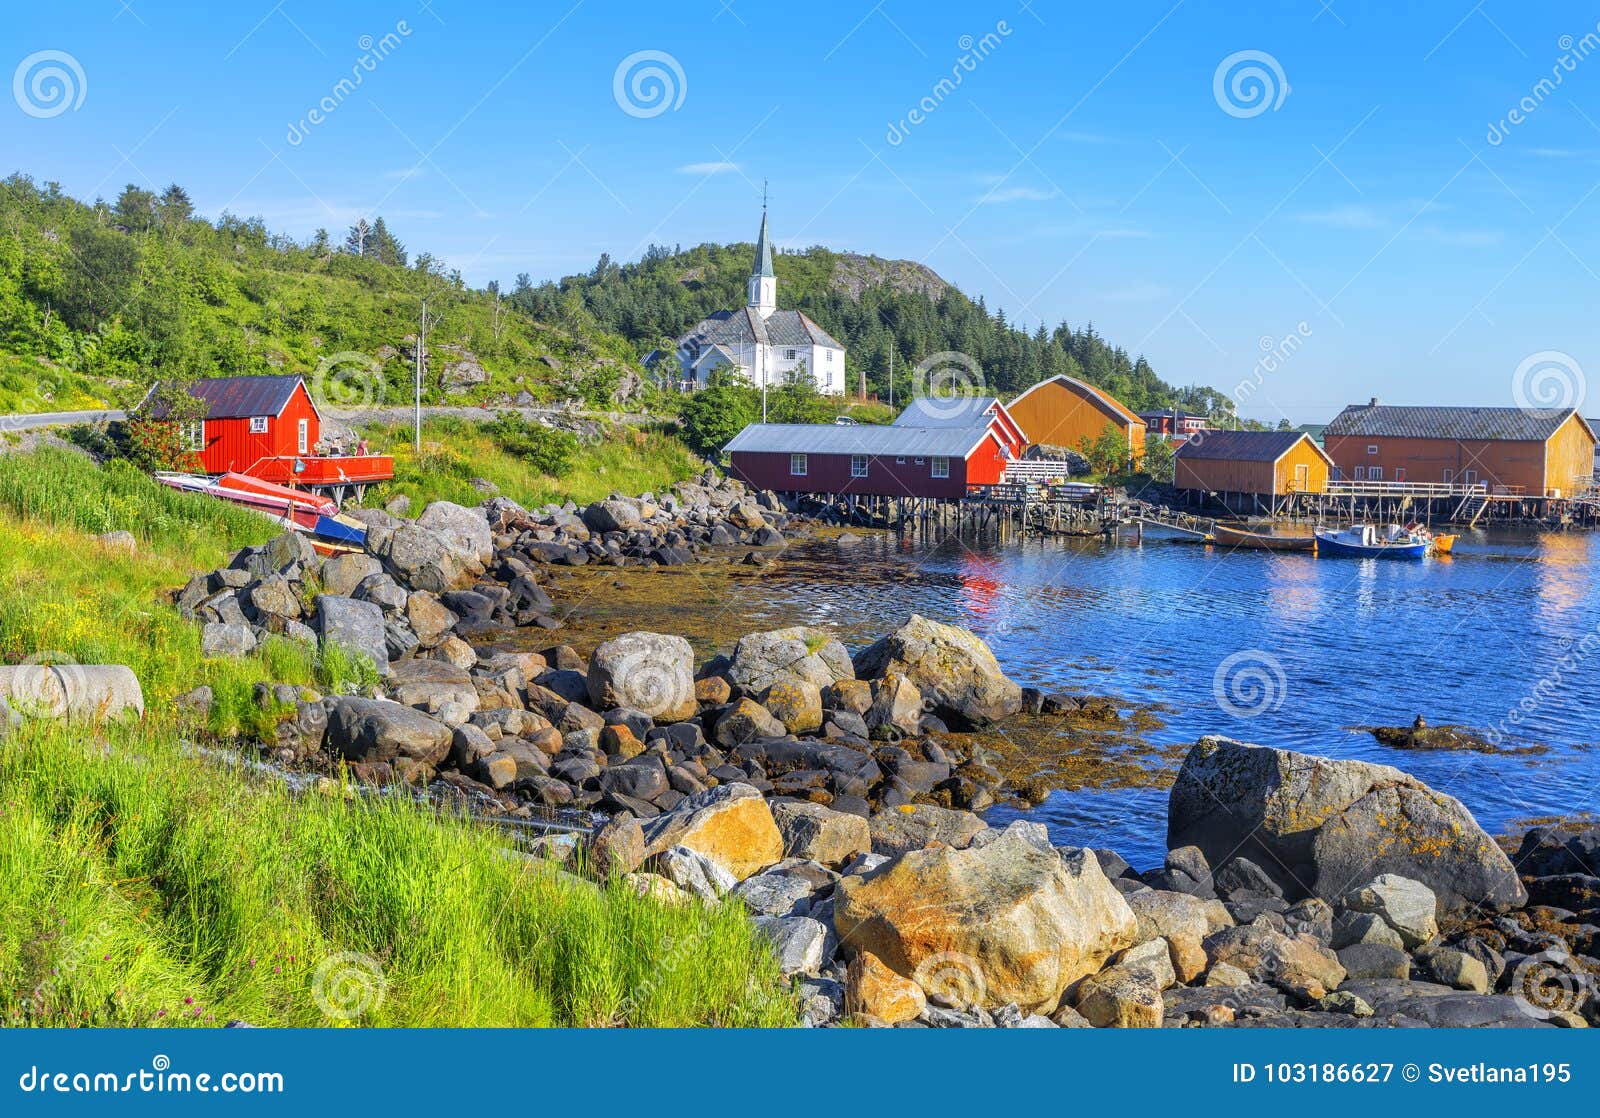 moskenes fishing village in lofoten islands and moskenes church